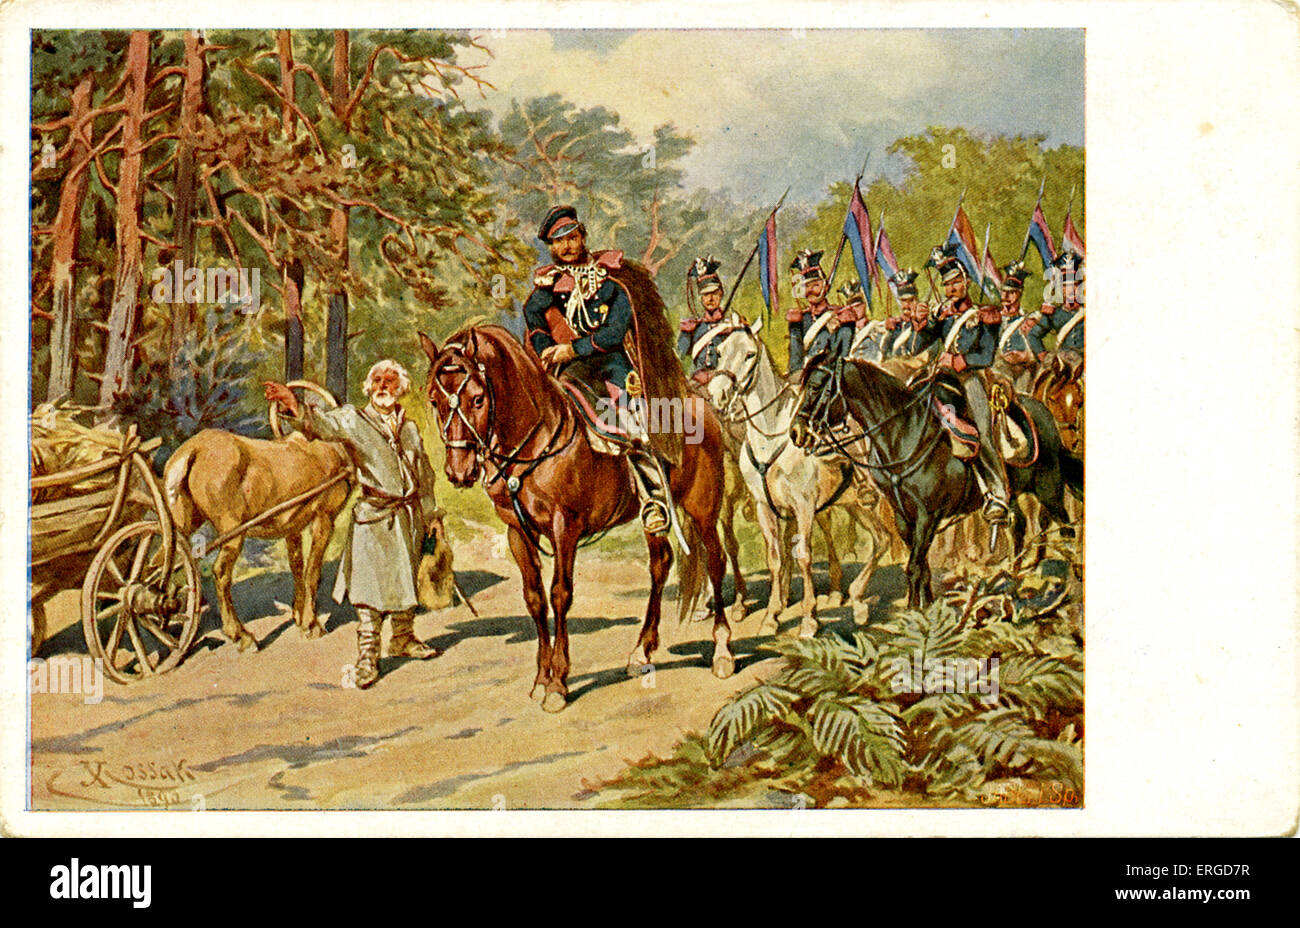 Lanzenreiter des Regiments Posen auf Patrouille, 1831 (polnische Regiment). Polnisch-russischen Krieg, 1830-1831 (Polen war besiegt). Stockfoto